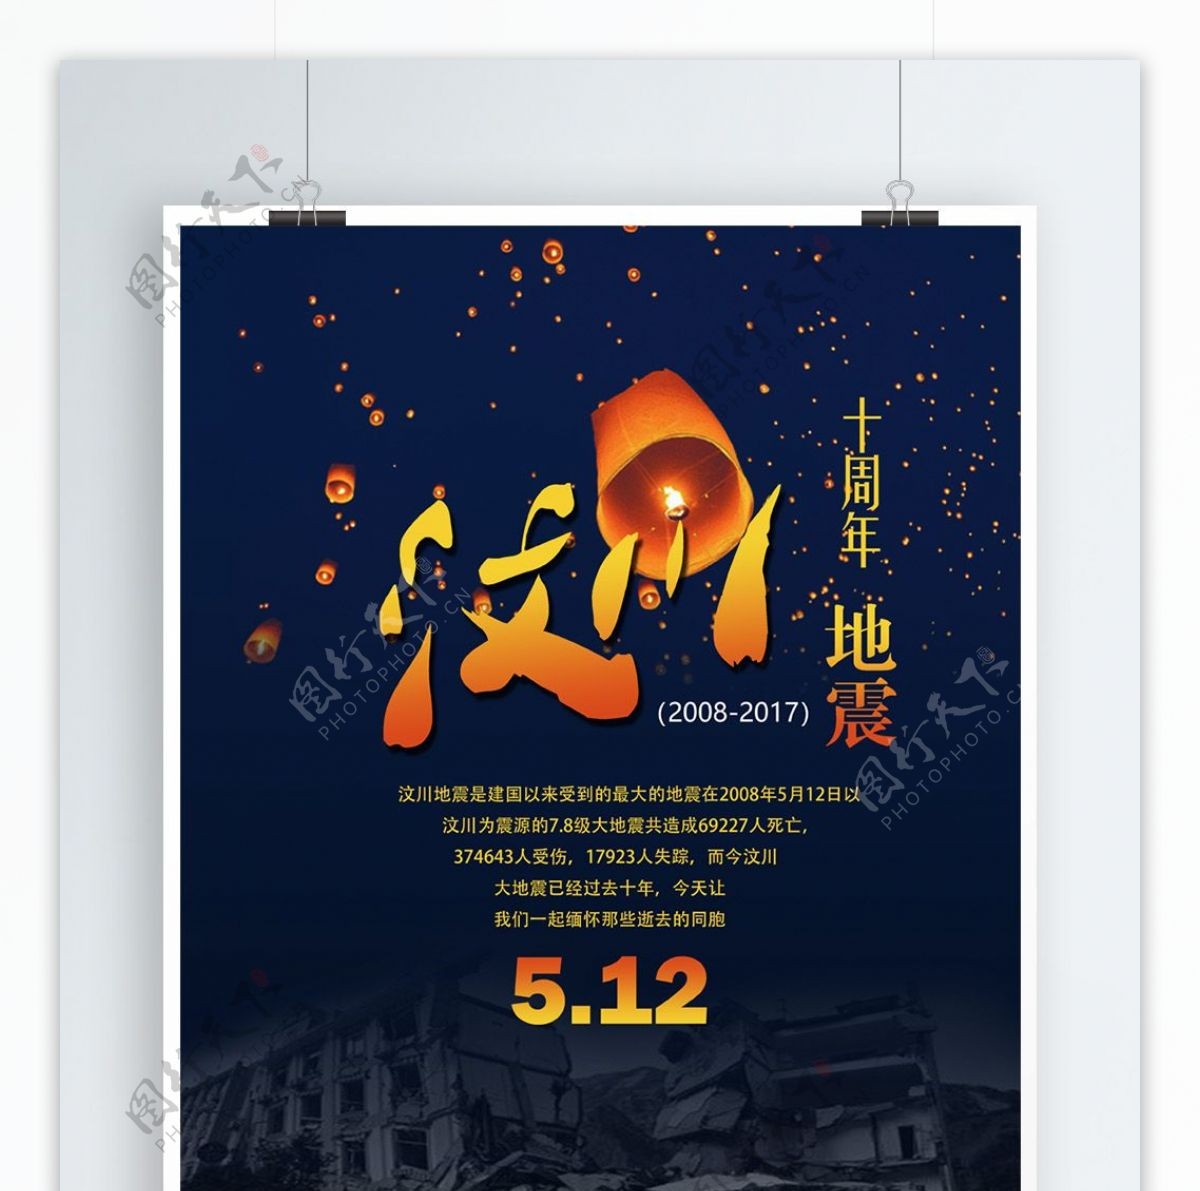 汶川512大地震十周年纪念